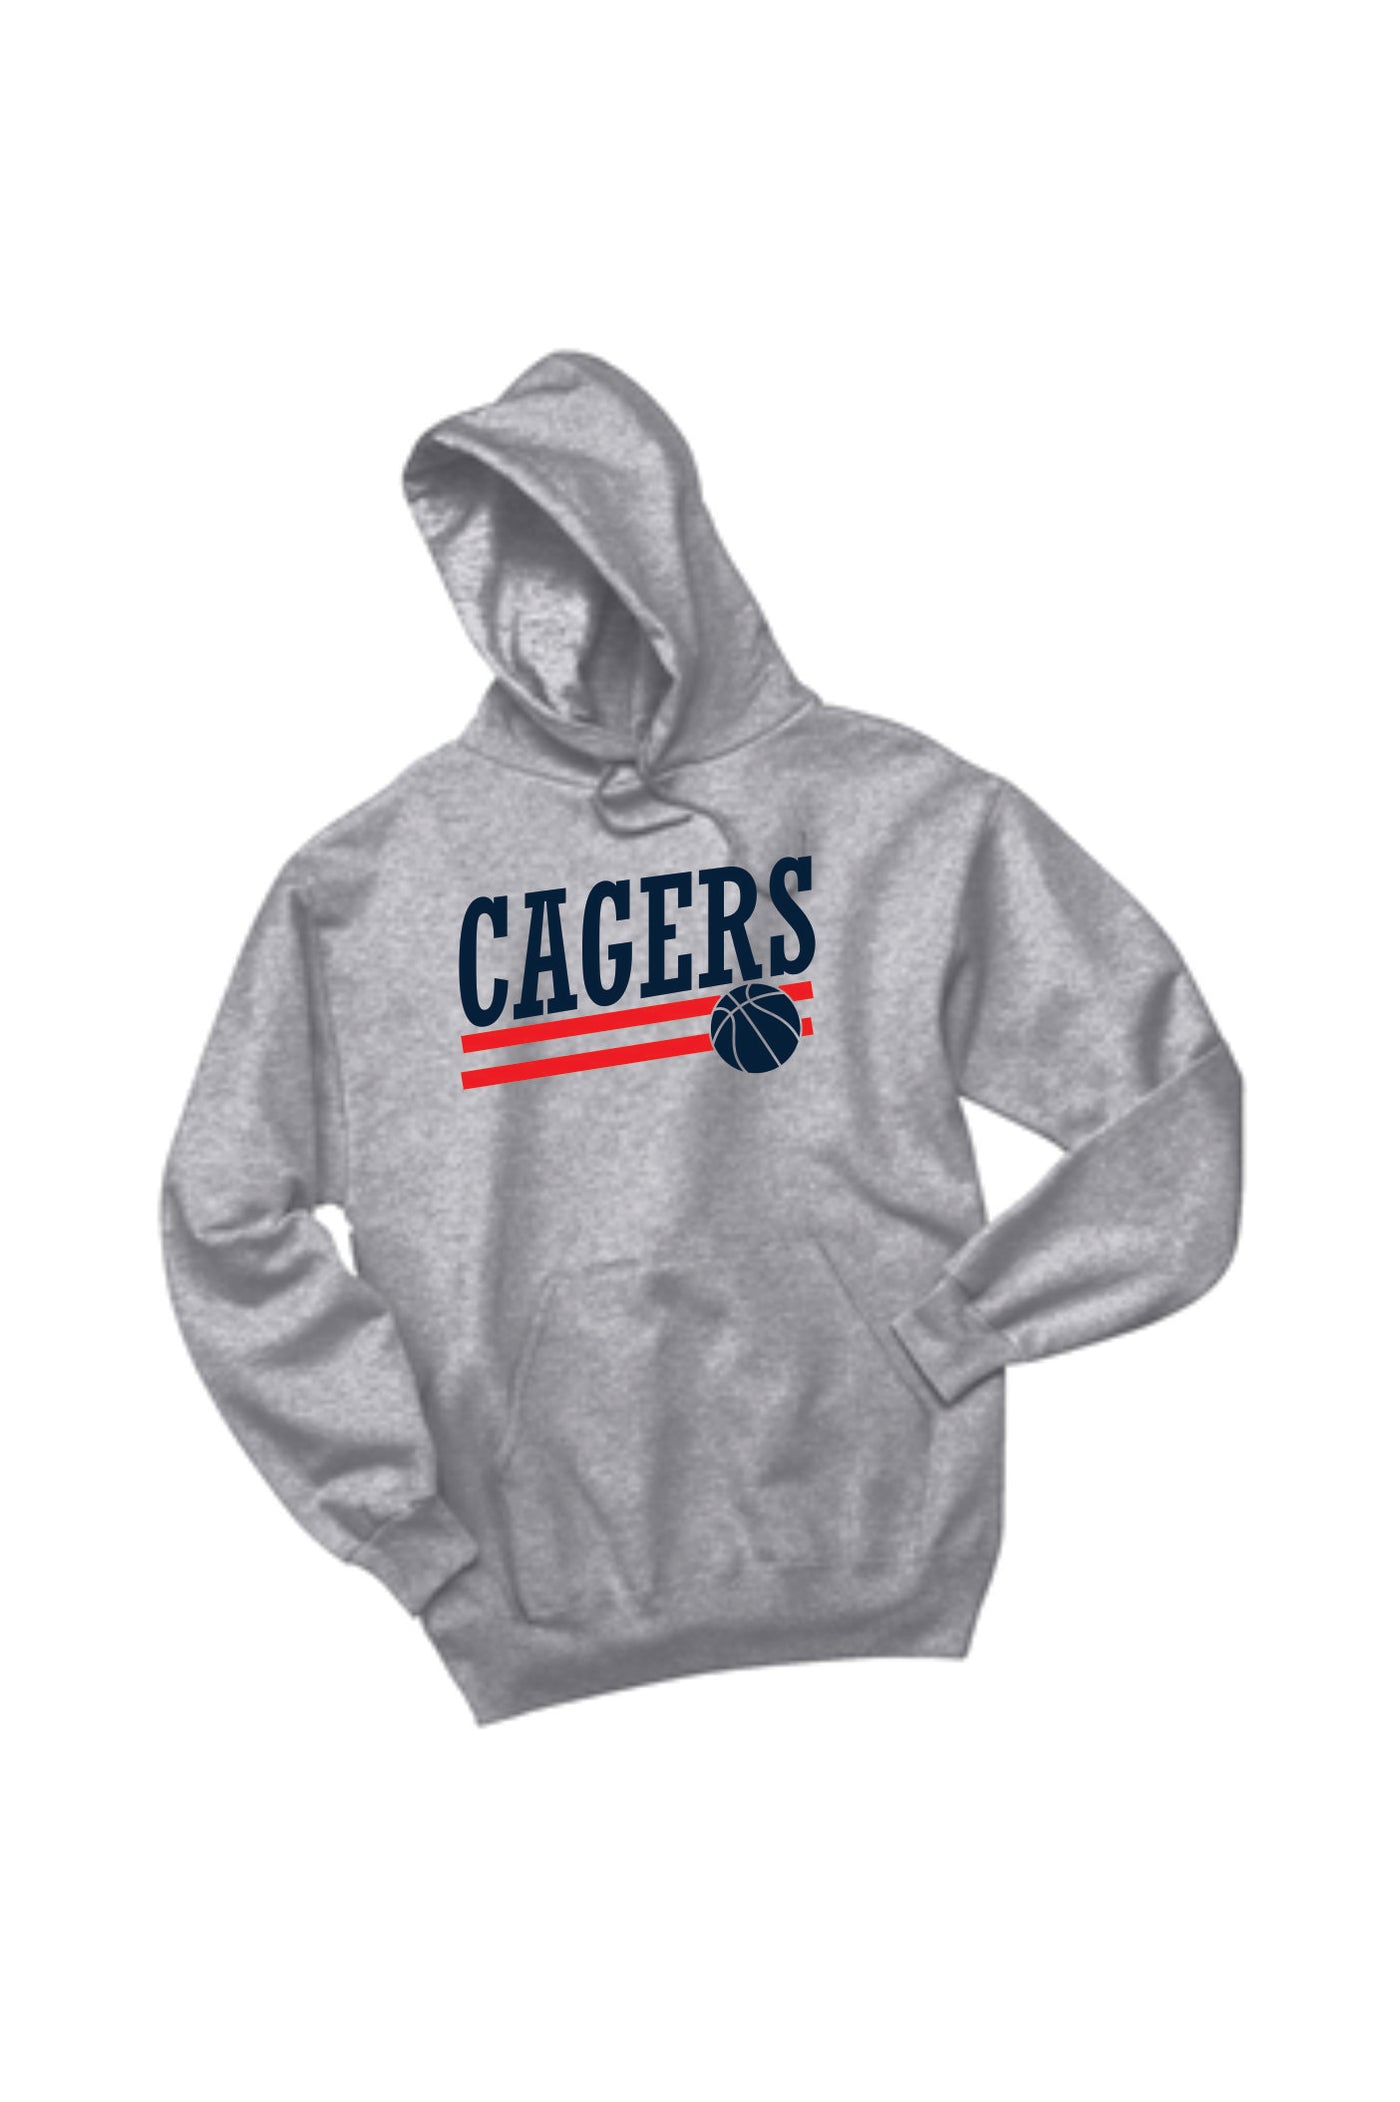 Cagers Basketball Slant Hooded Sweatshirt